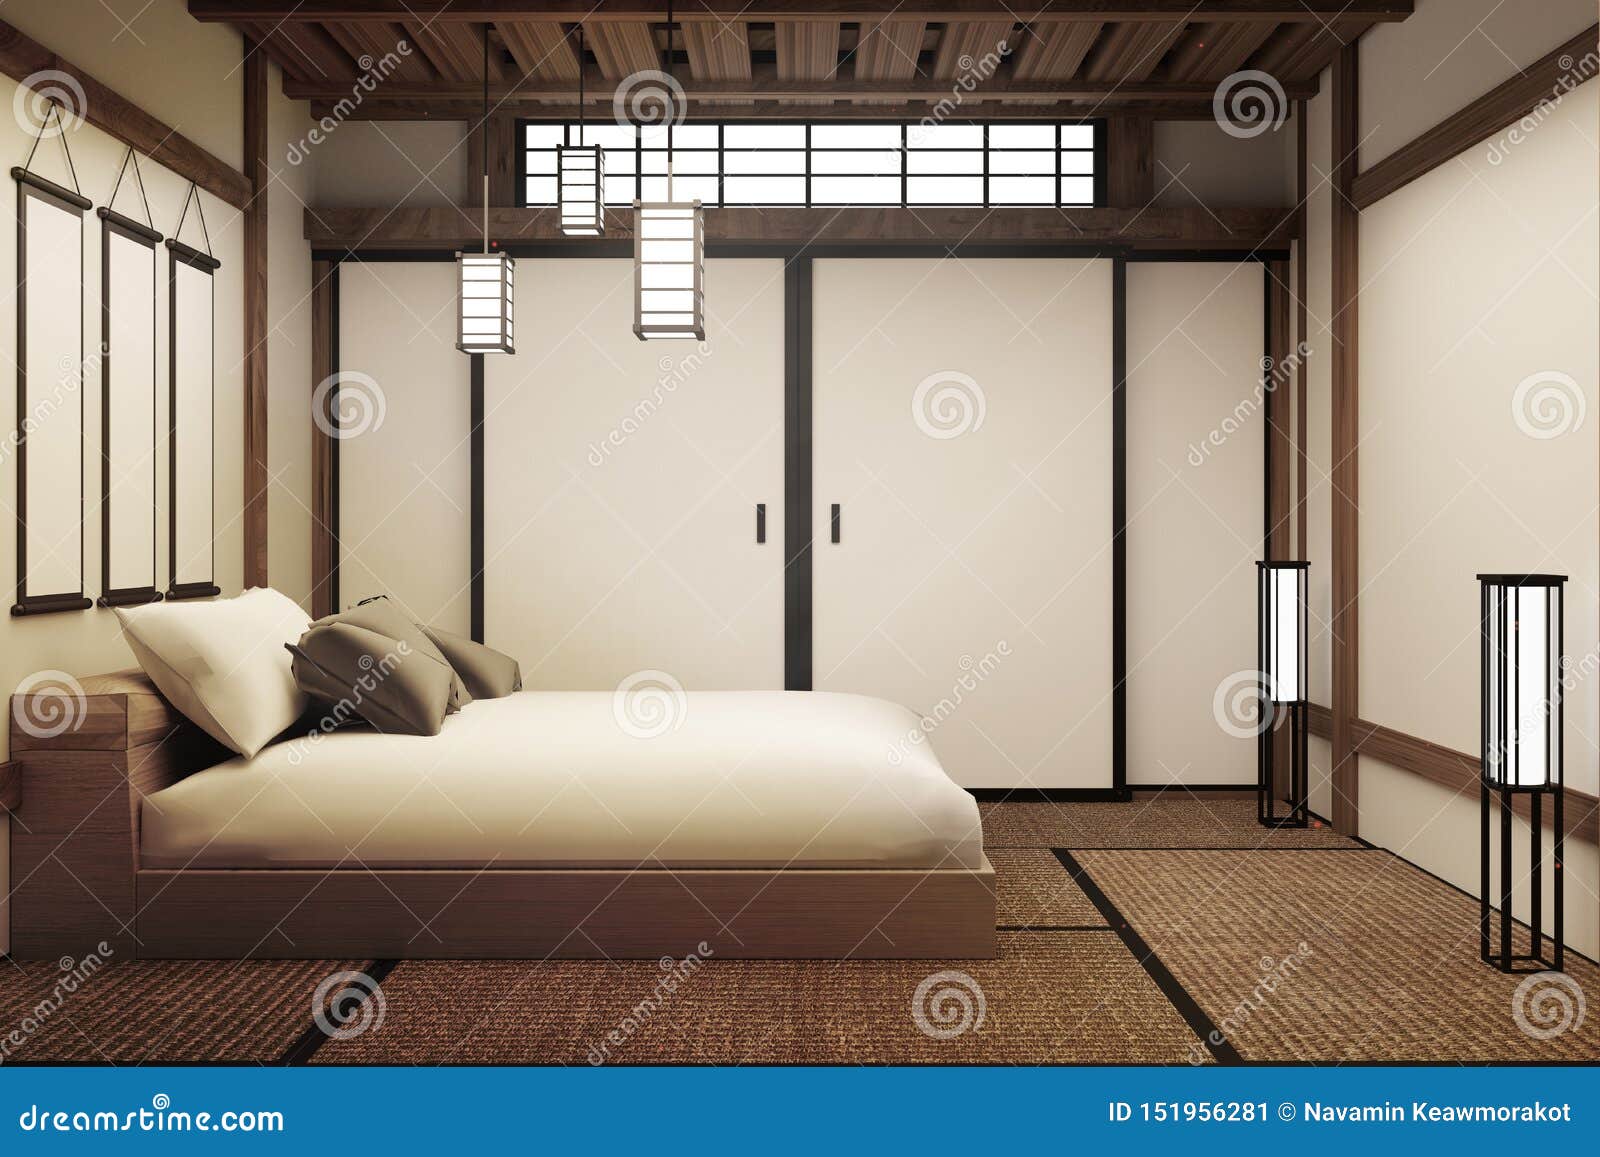 Японская Спальня Фото